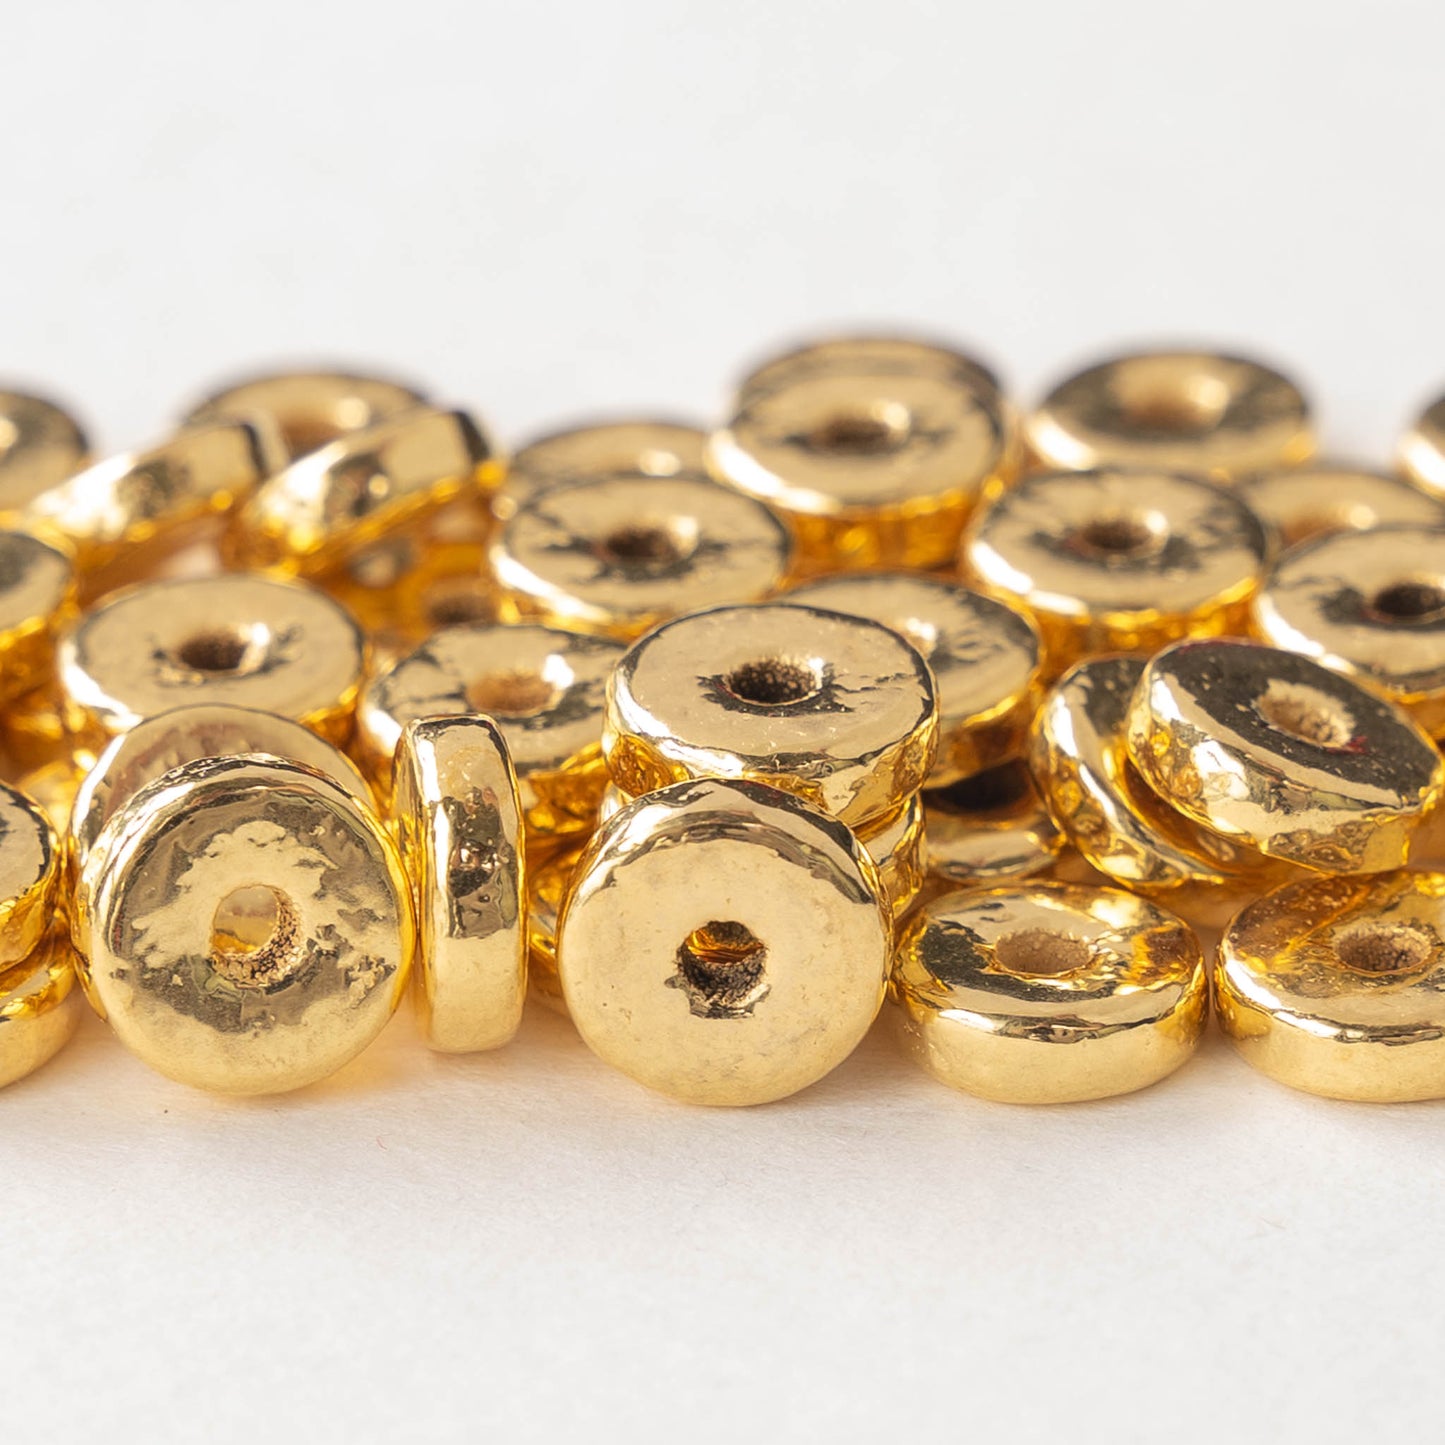 24K Gold Coated Ceramic Washer Beads - 8mm - Choose Amount